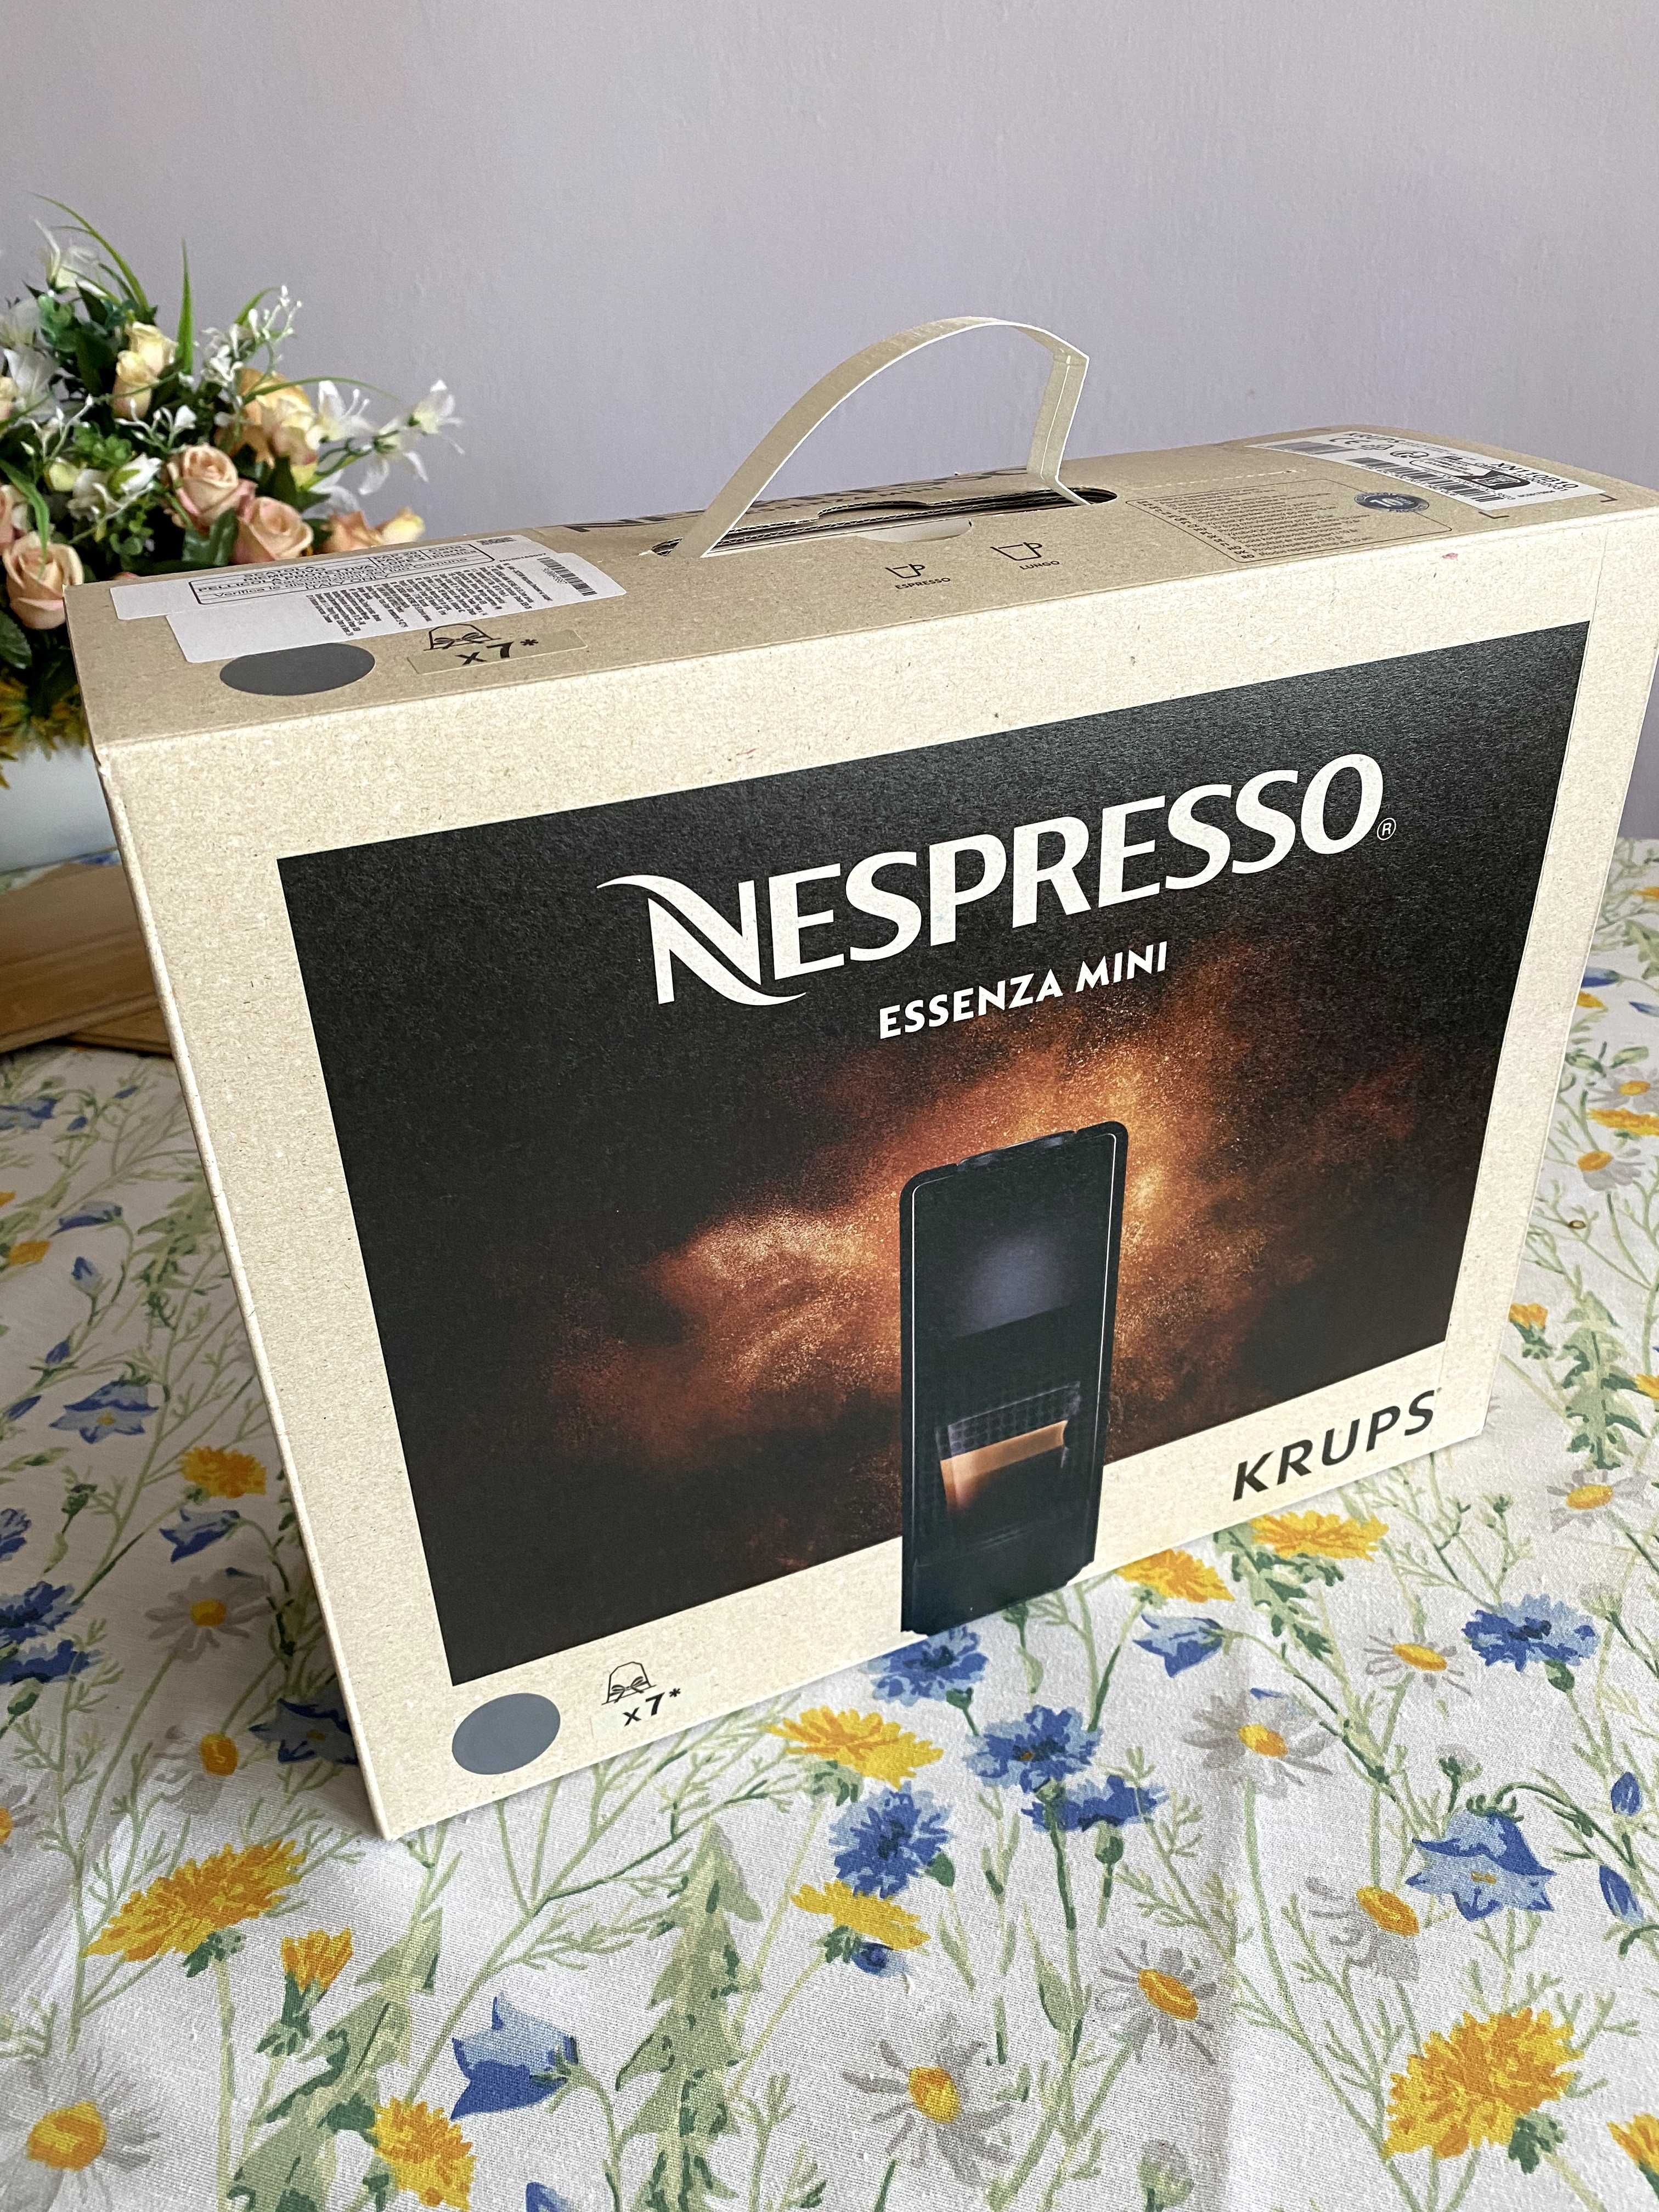 Nespresso Krups Essenza Mini - Sprzedaje jako uszkodzony